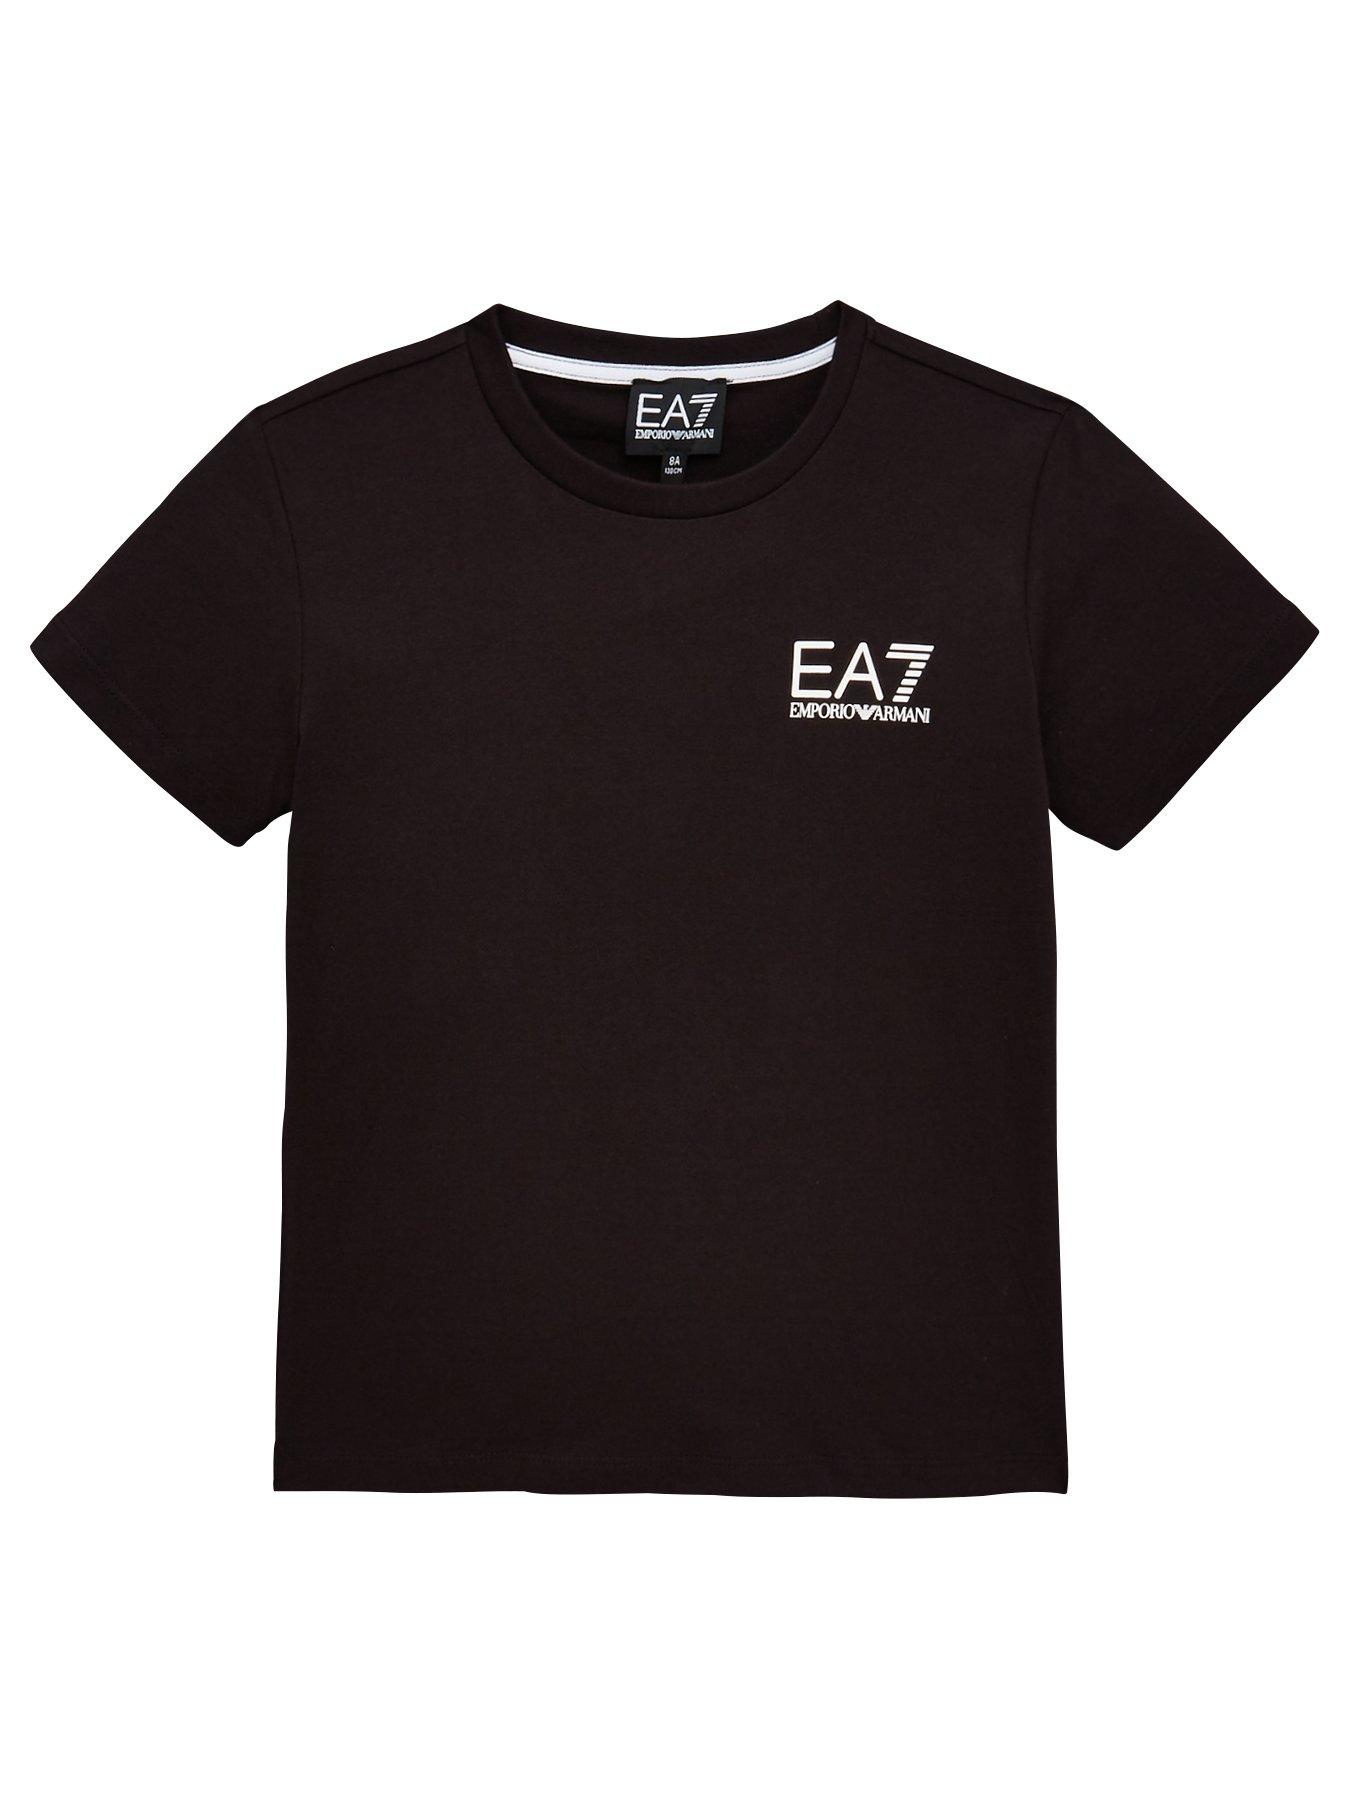 EA7 Emporio Armani Boys Short Sleeve 